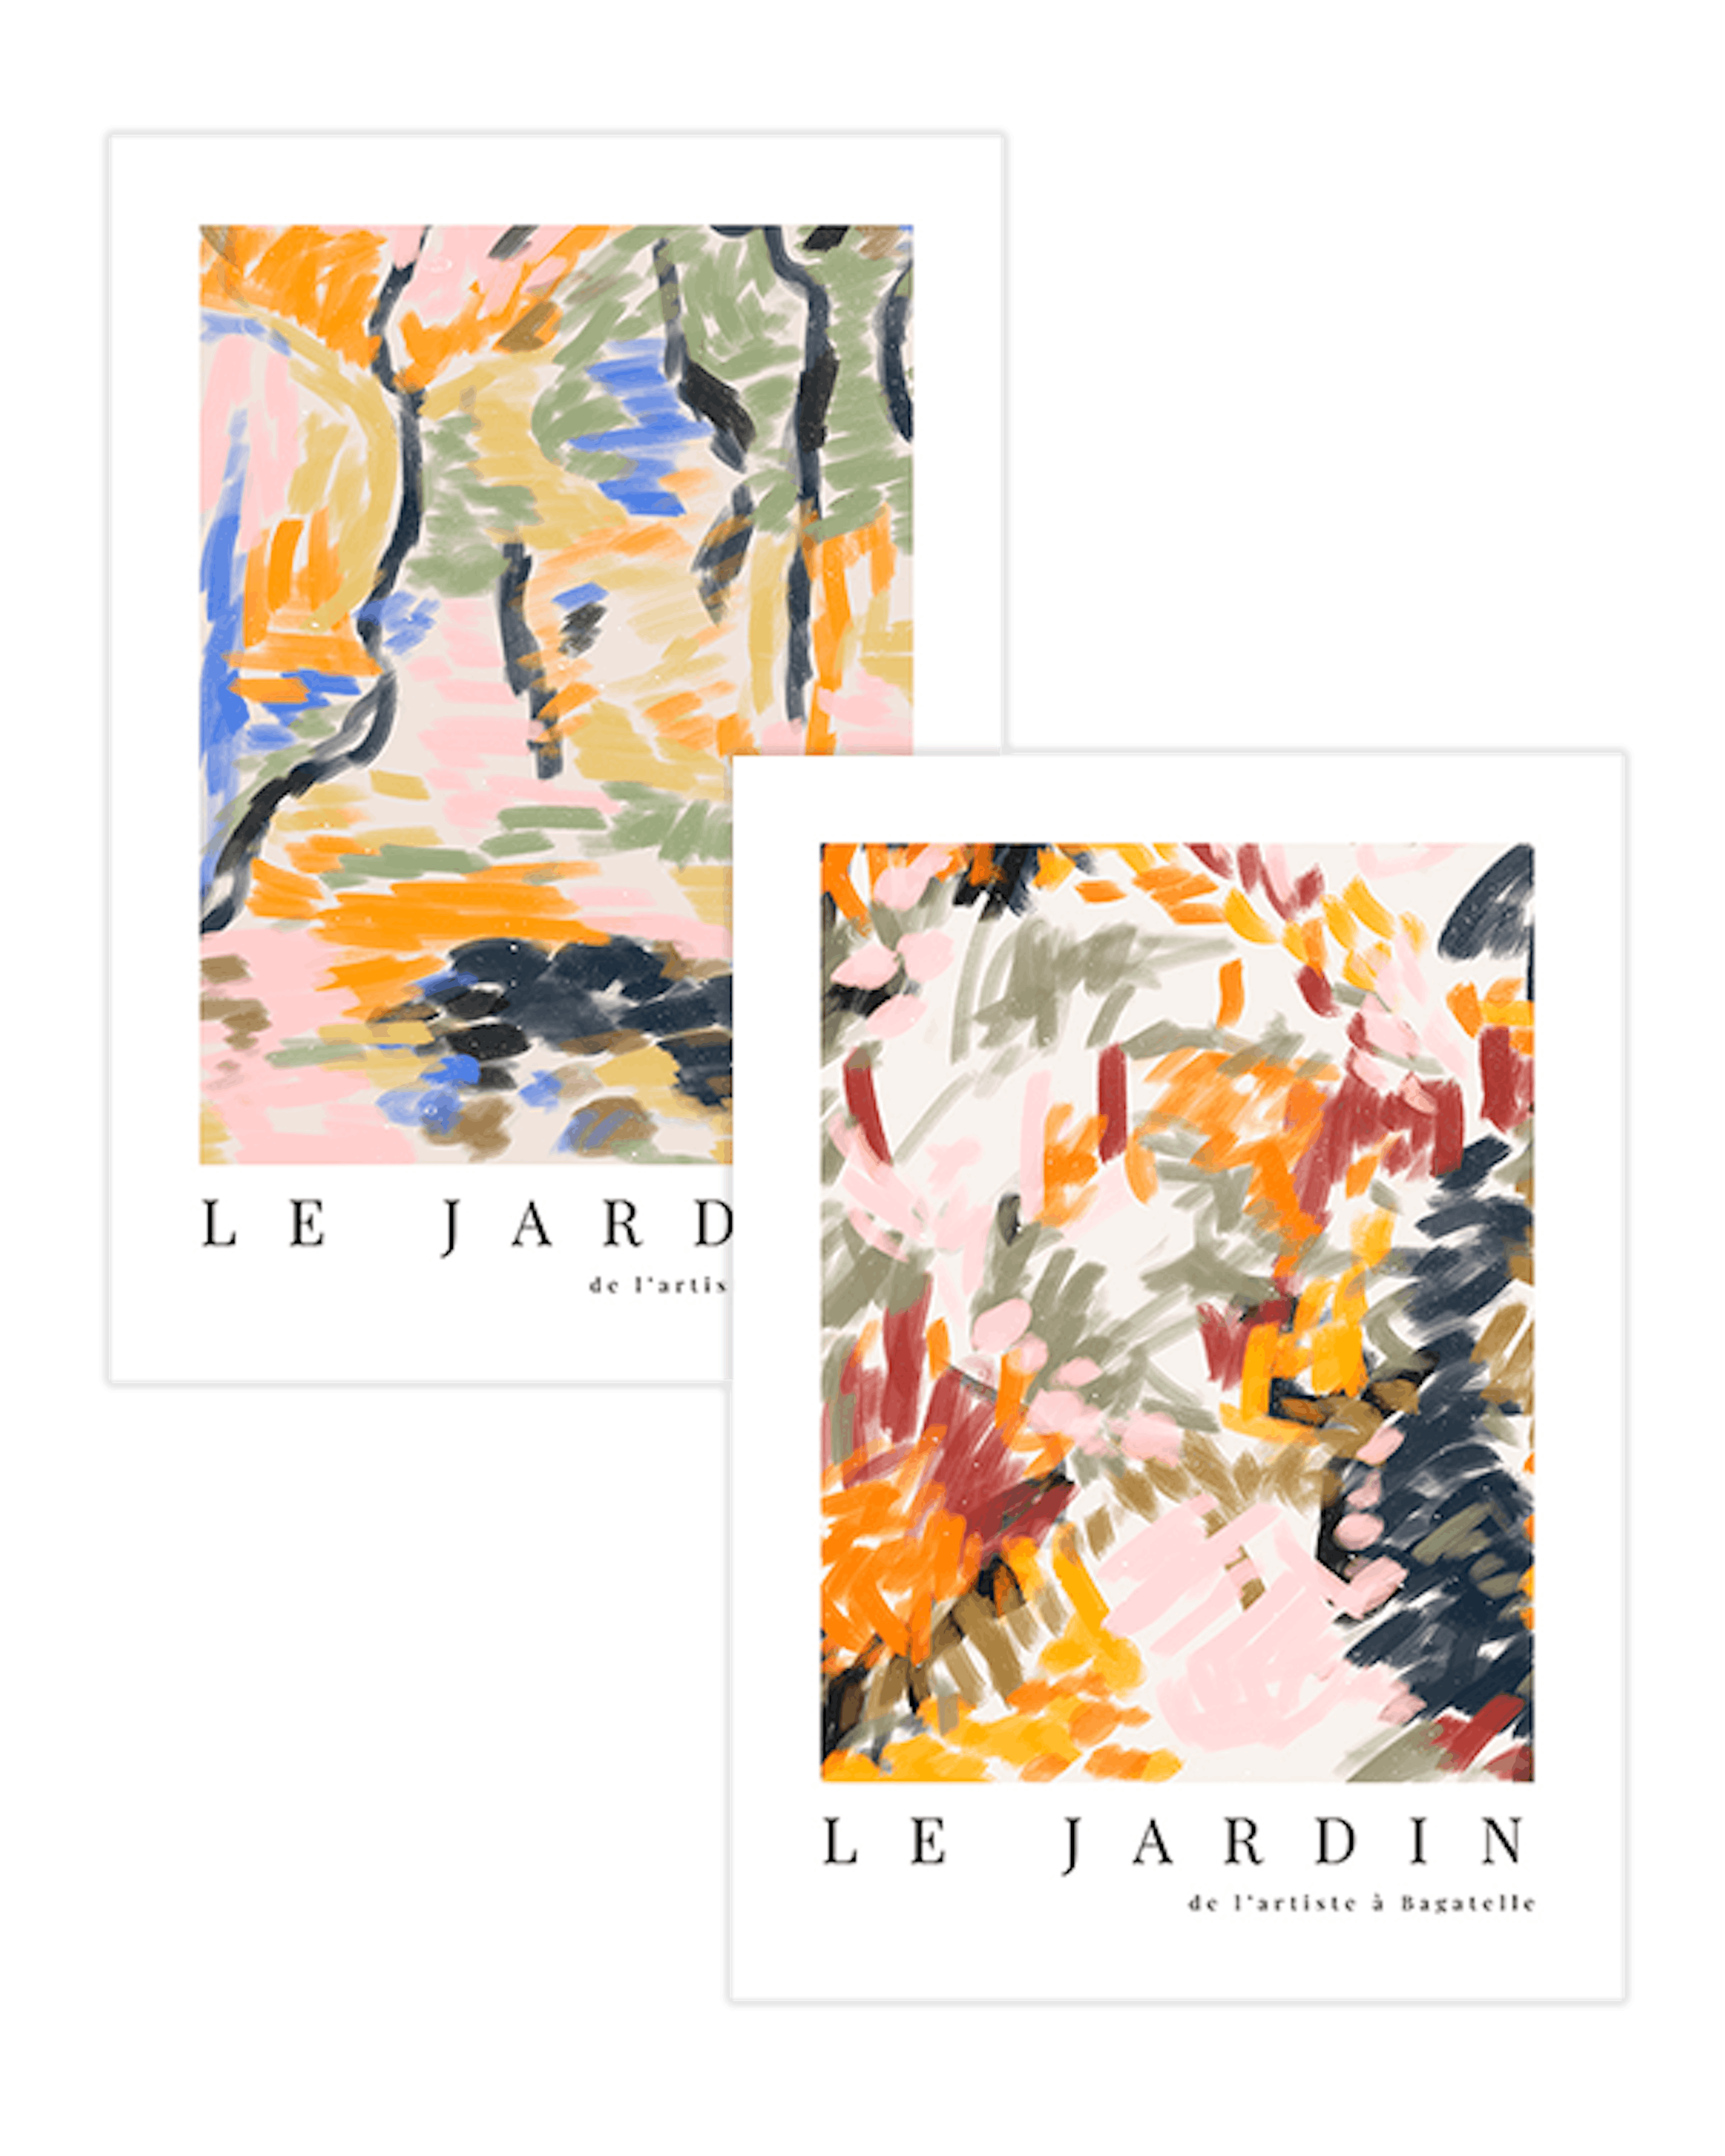 Le Jardin Duo Plakat pakker